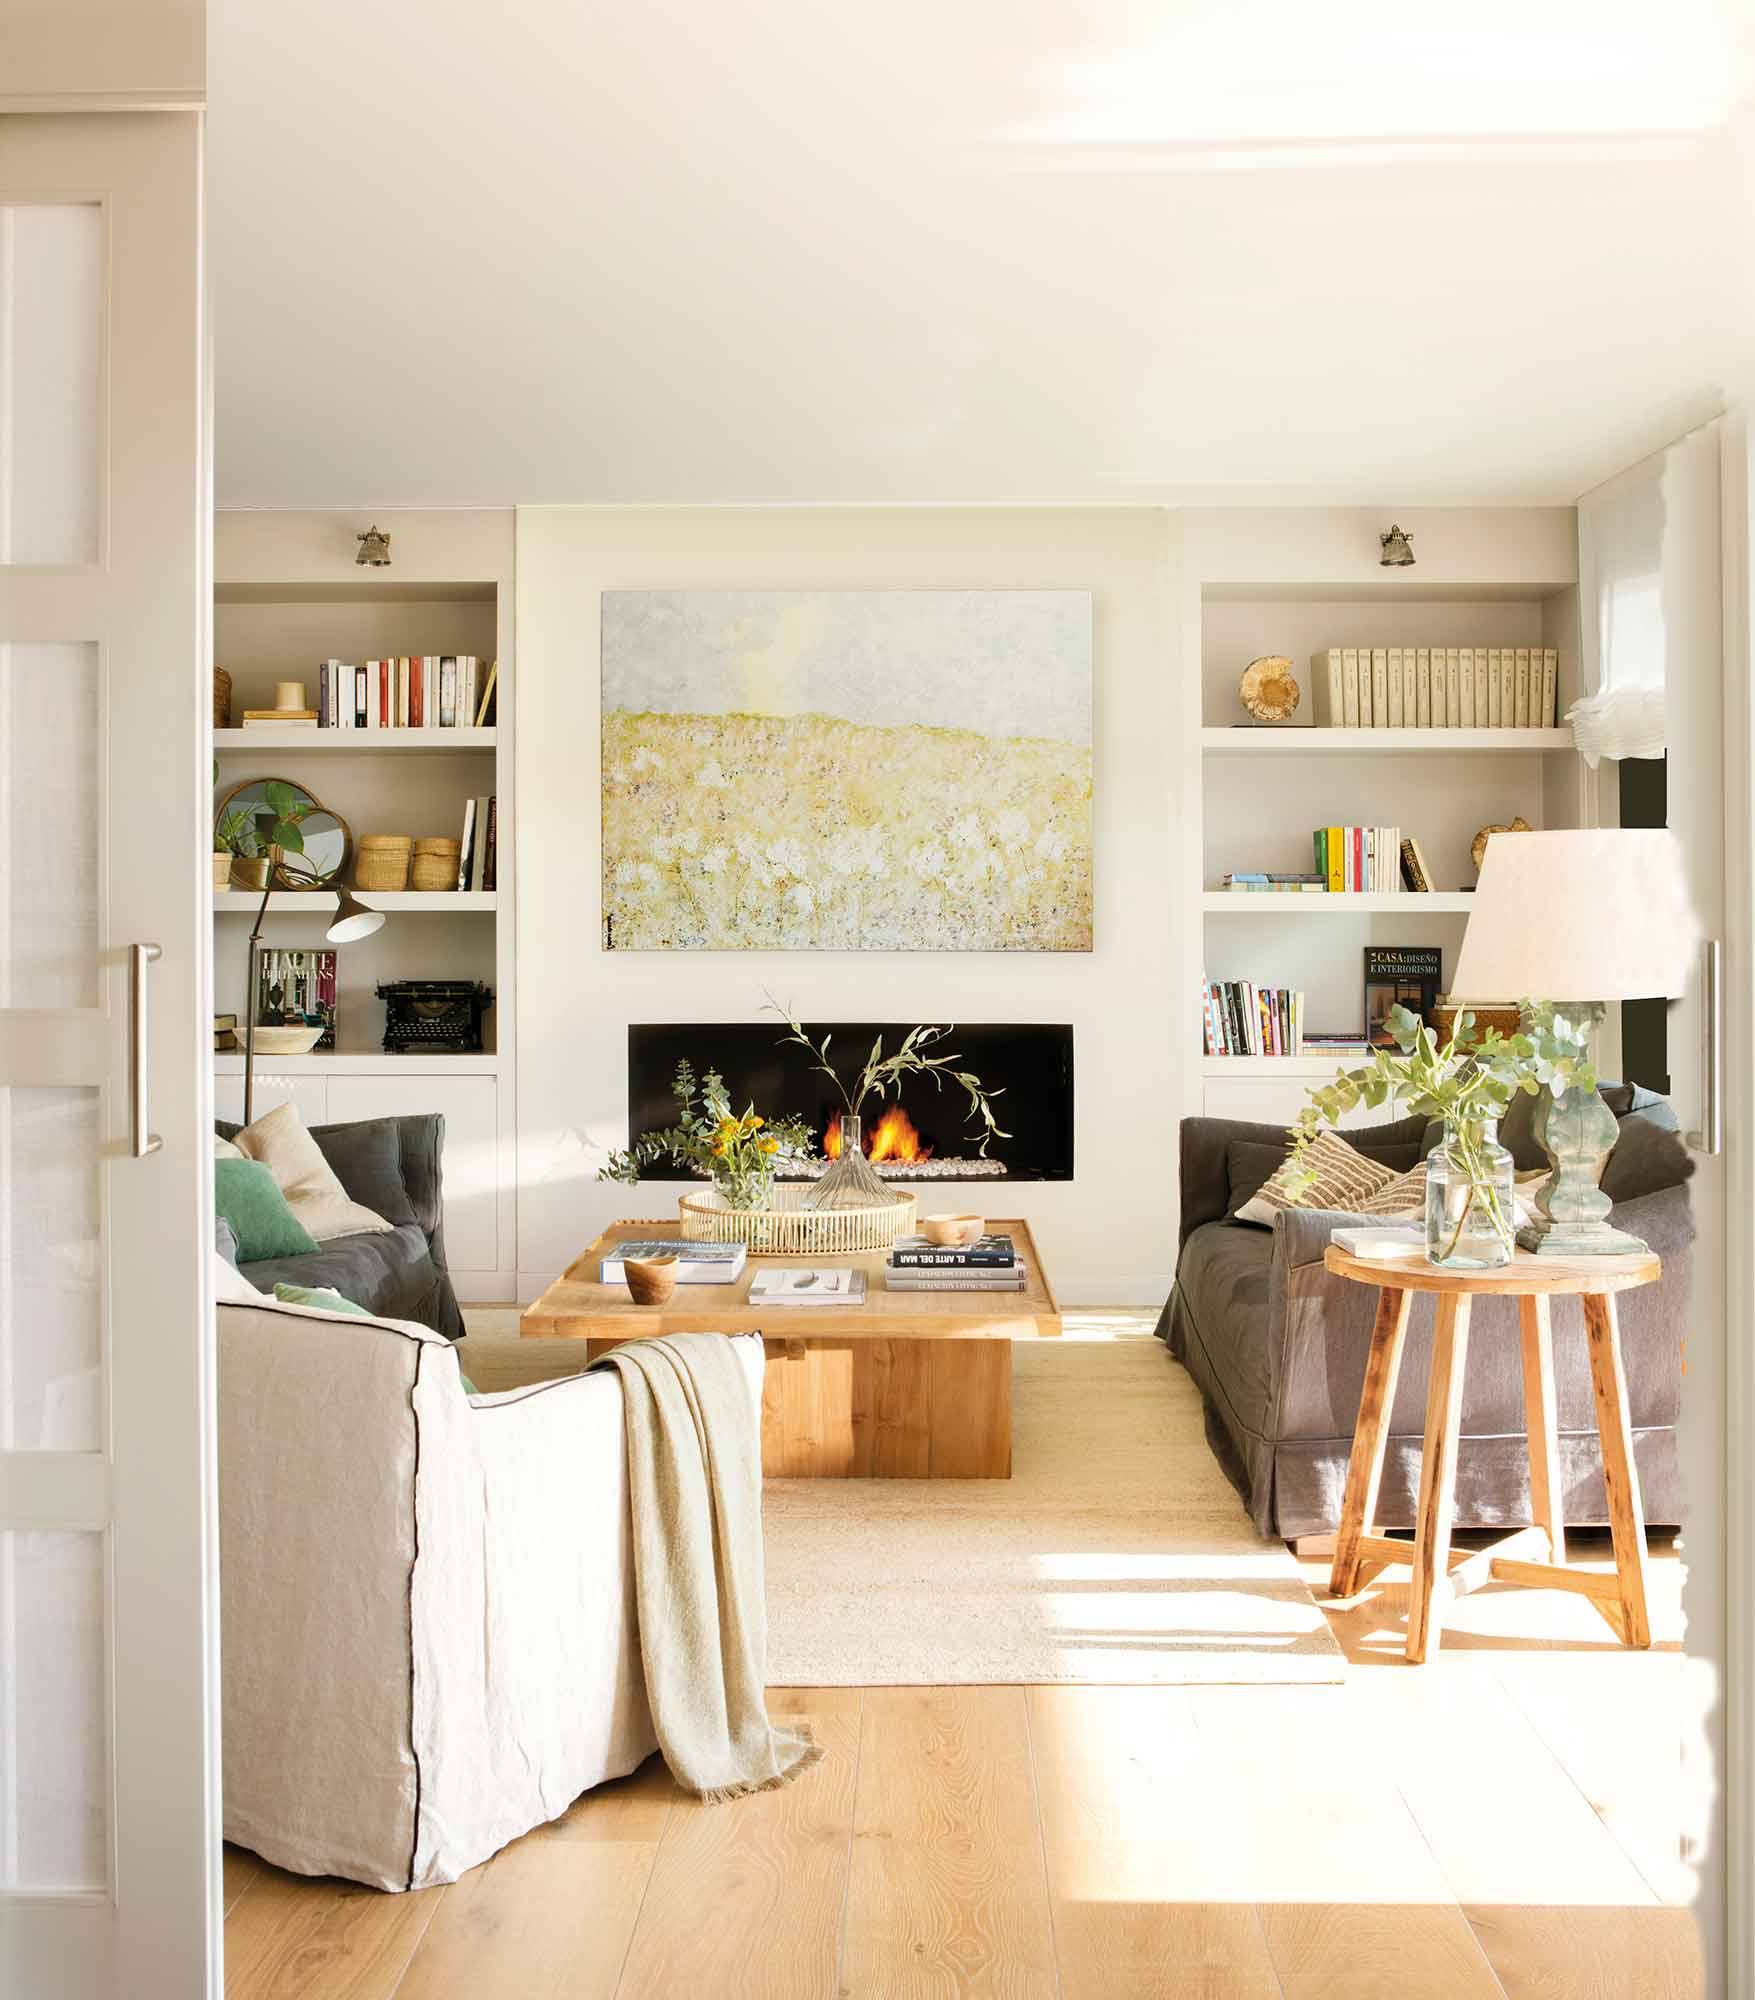 Salón con chimenea en tonos blanco roto, sofá gris, cuadro grande y estanterías a ambos lados.